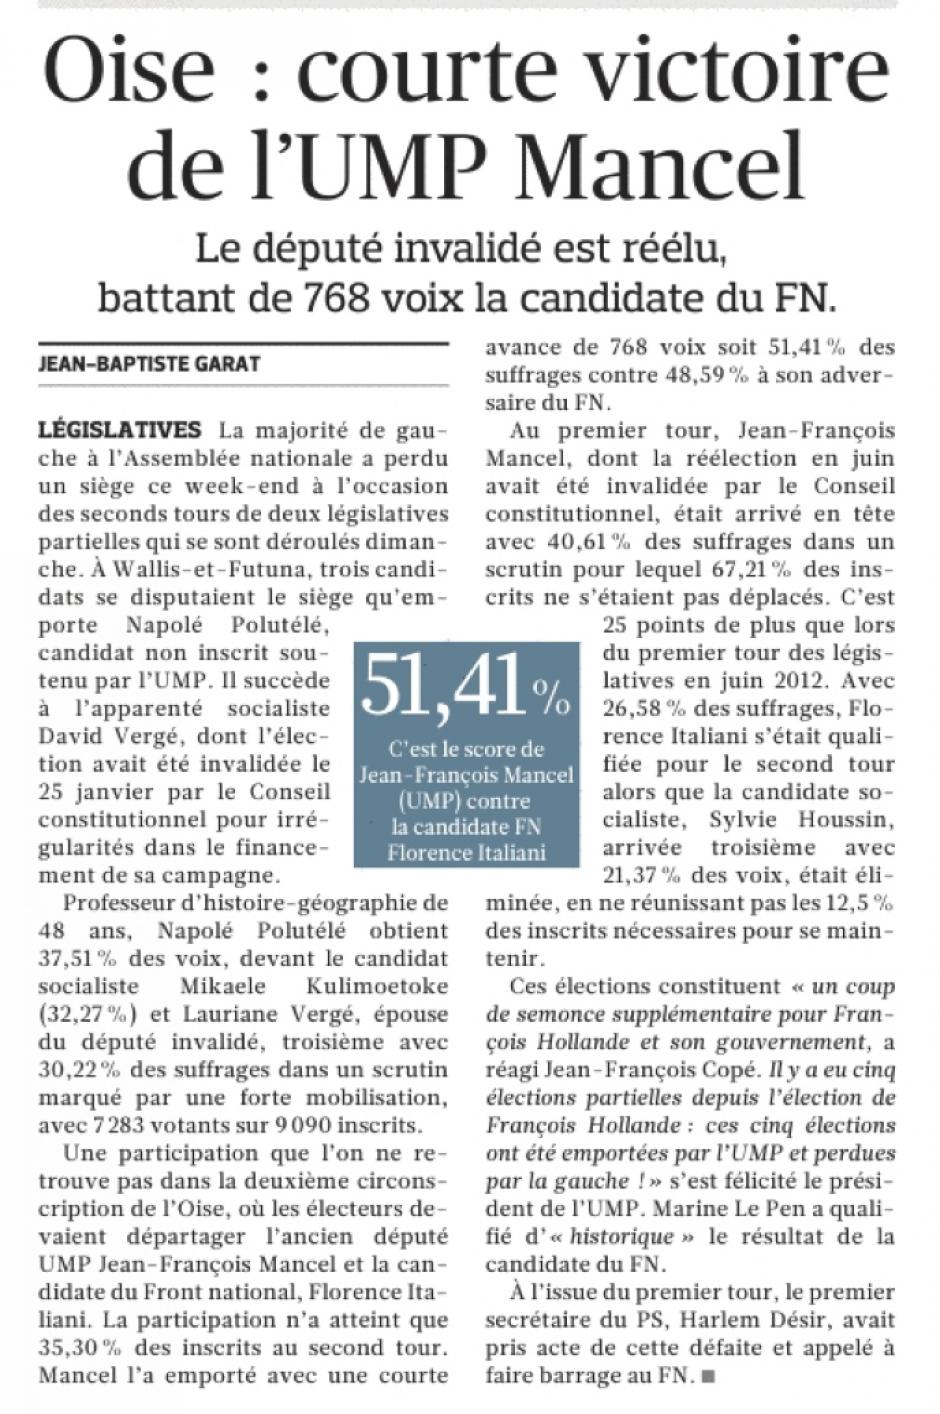 20130325-Le Figaro-2C-Oise : courte victoire de l'UMP Mancel